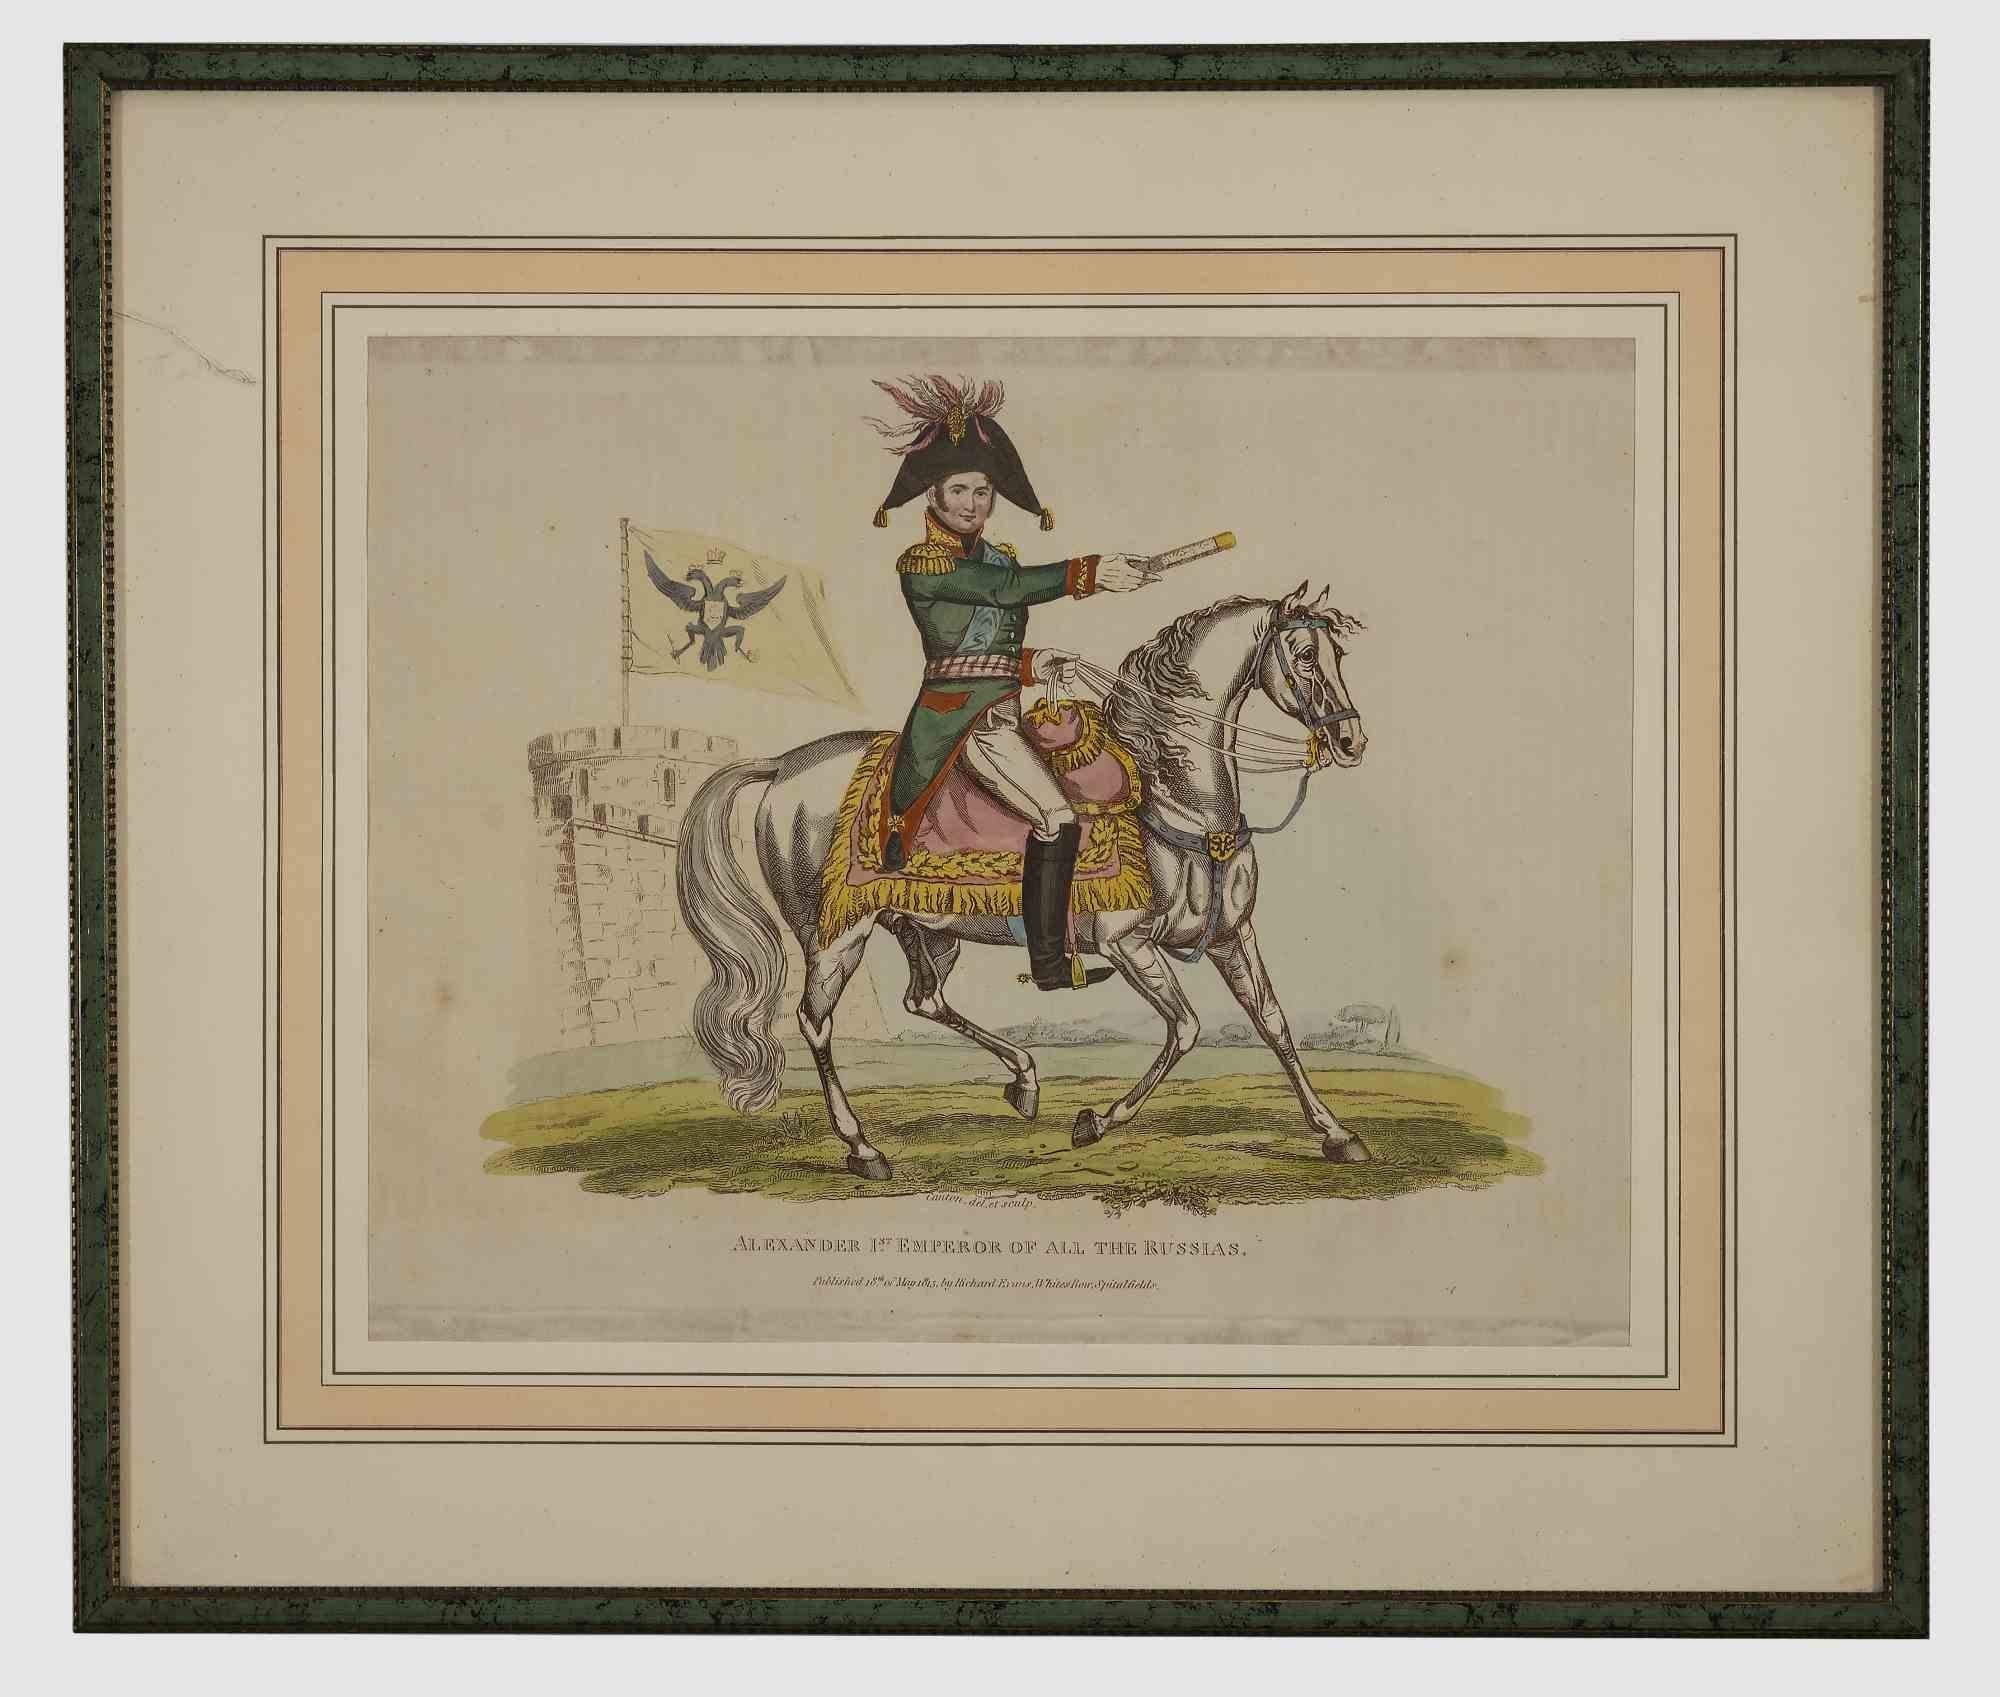 L'empereur d'Alexandre - Lithographie originale - 1816 environ.